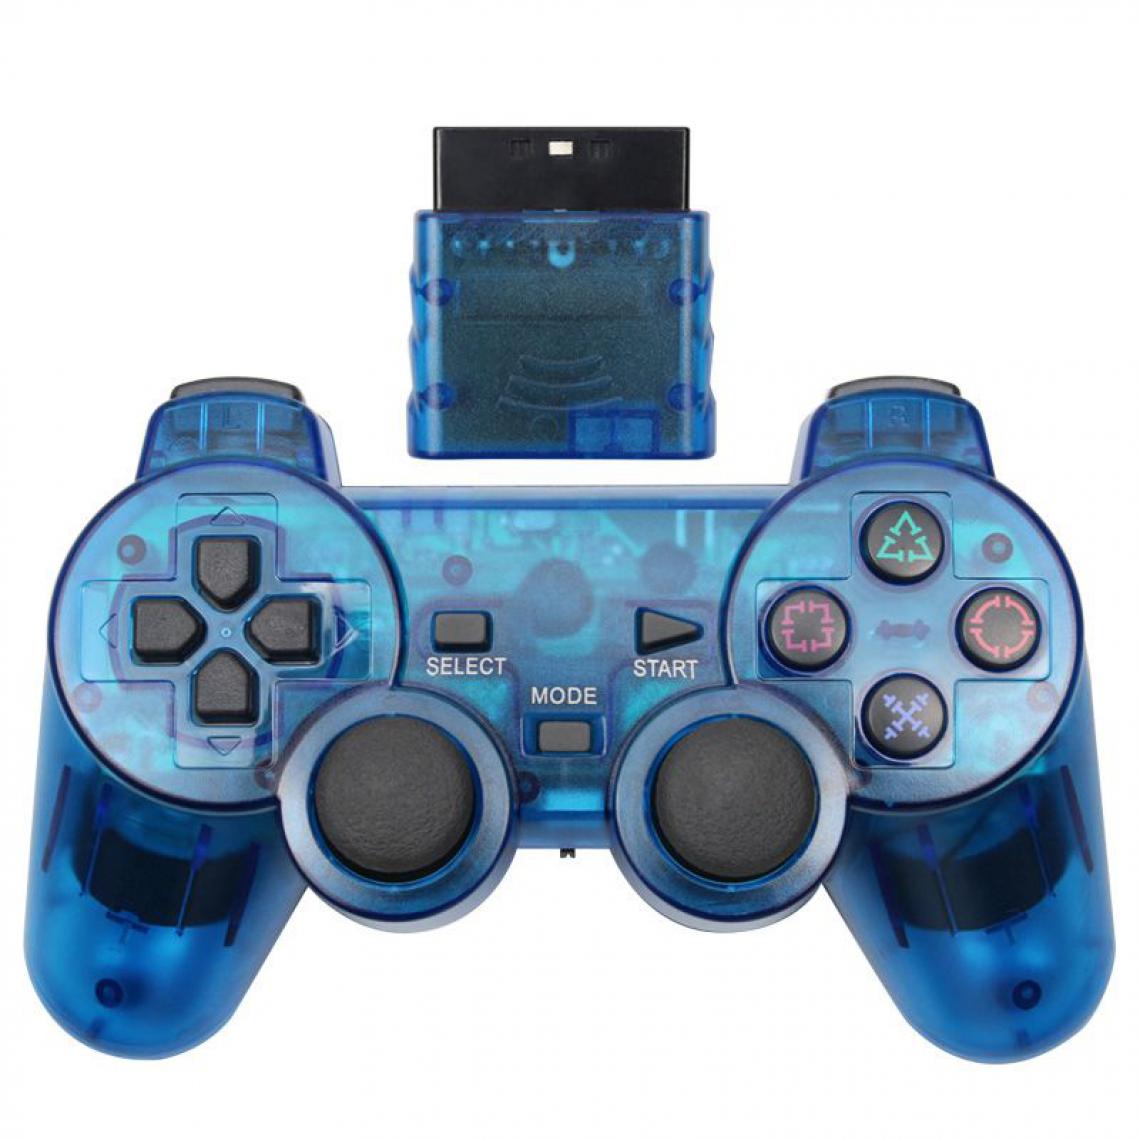 Generic - Manette de jeu sans fil , Joystick, Double Vibration, antichoc  et contrôleur USB pour Console Playstation 2 16 * 9.5 cm - Bleu  - Joystick